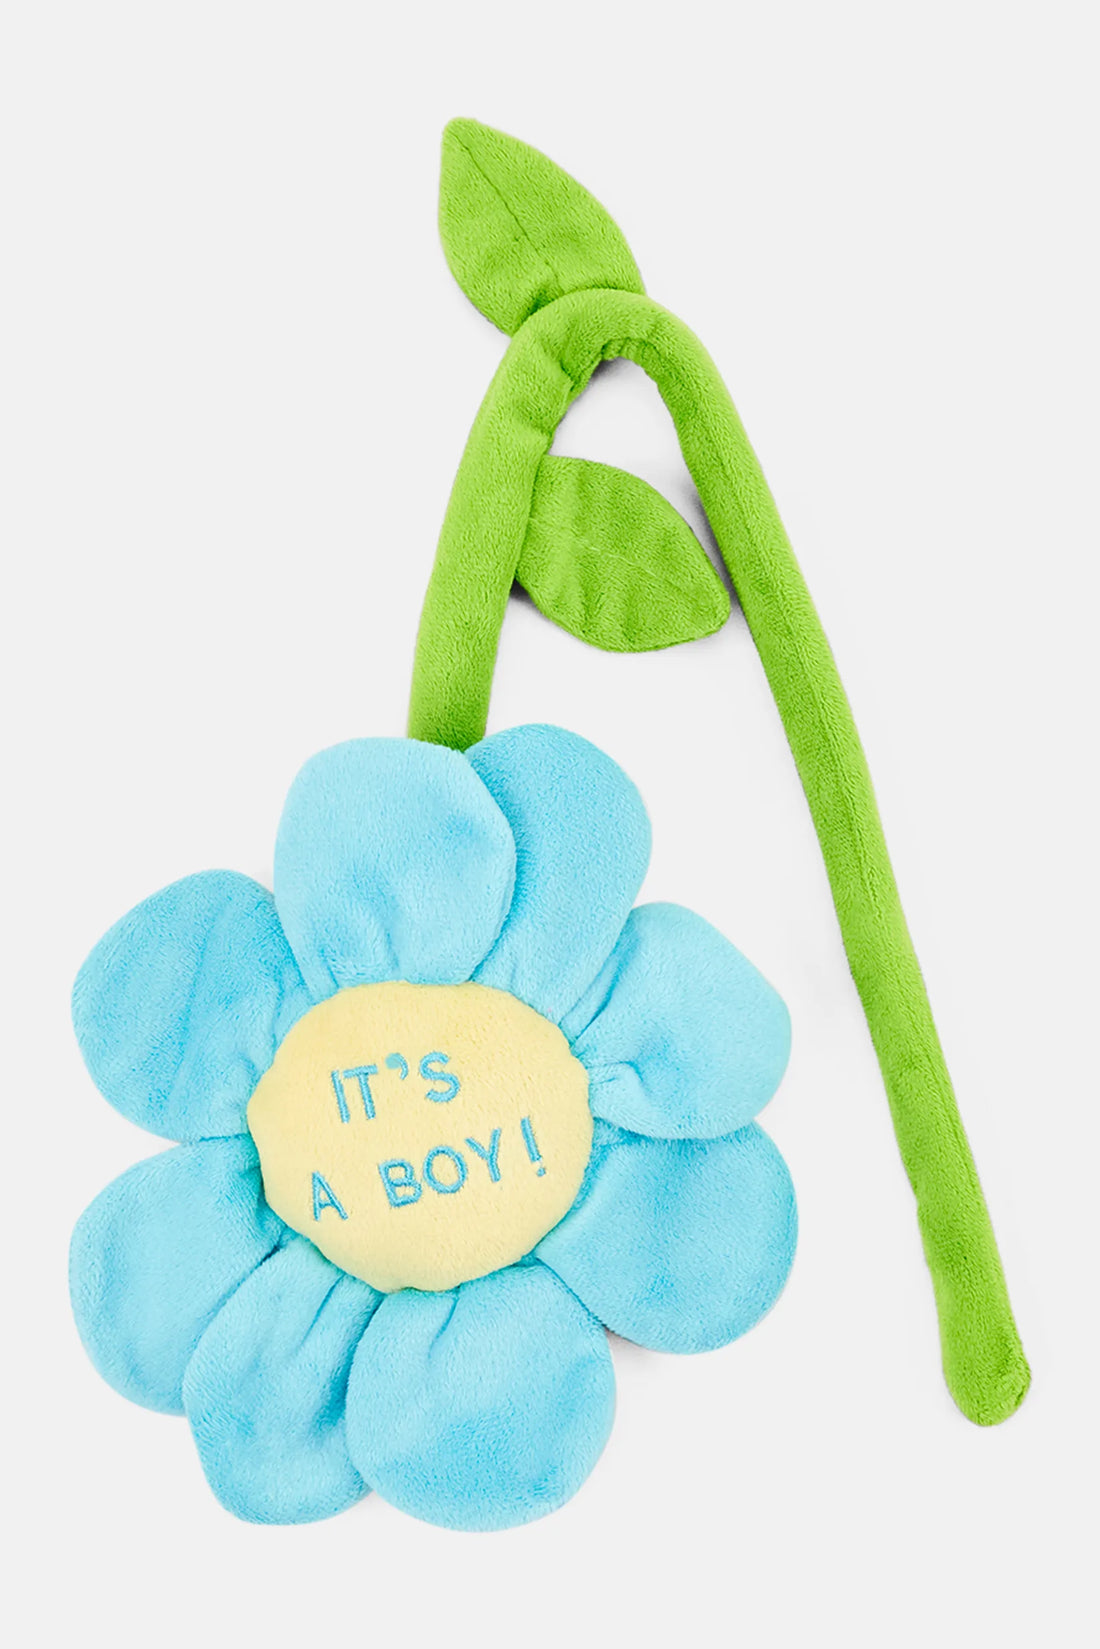 Cuddles Plush Daisy Sunflower Soft Toy Its a Boy